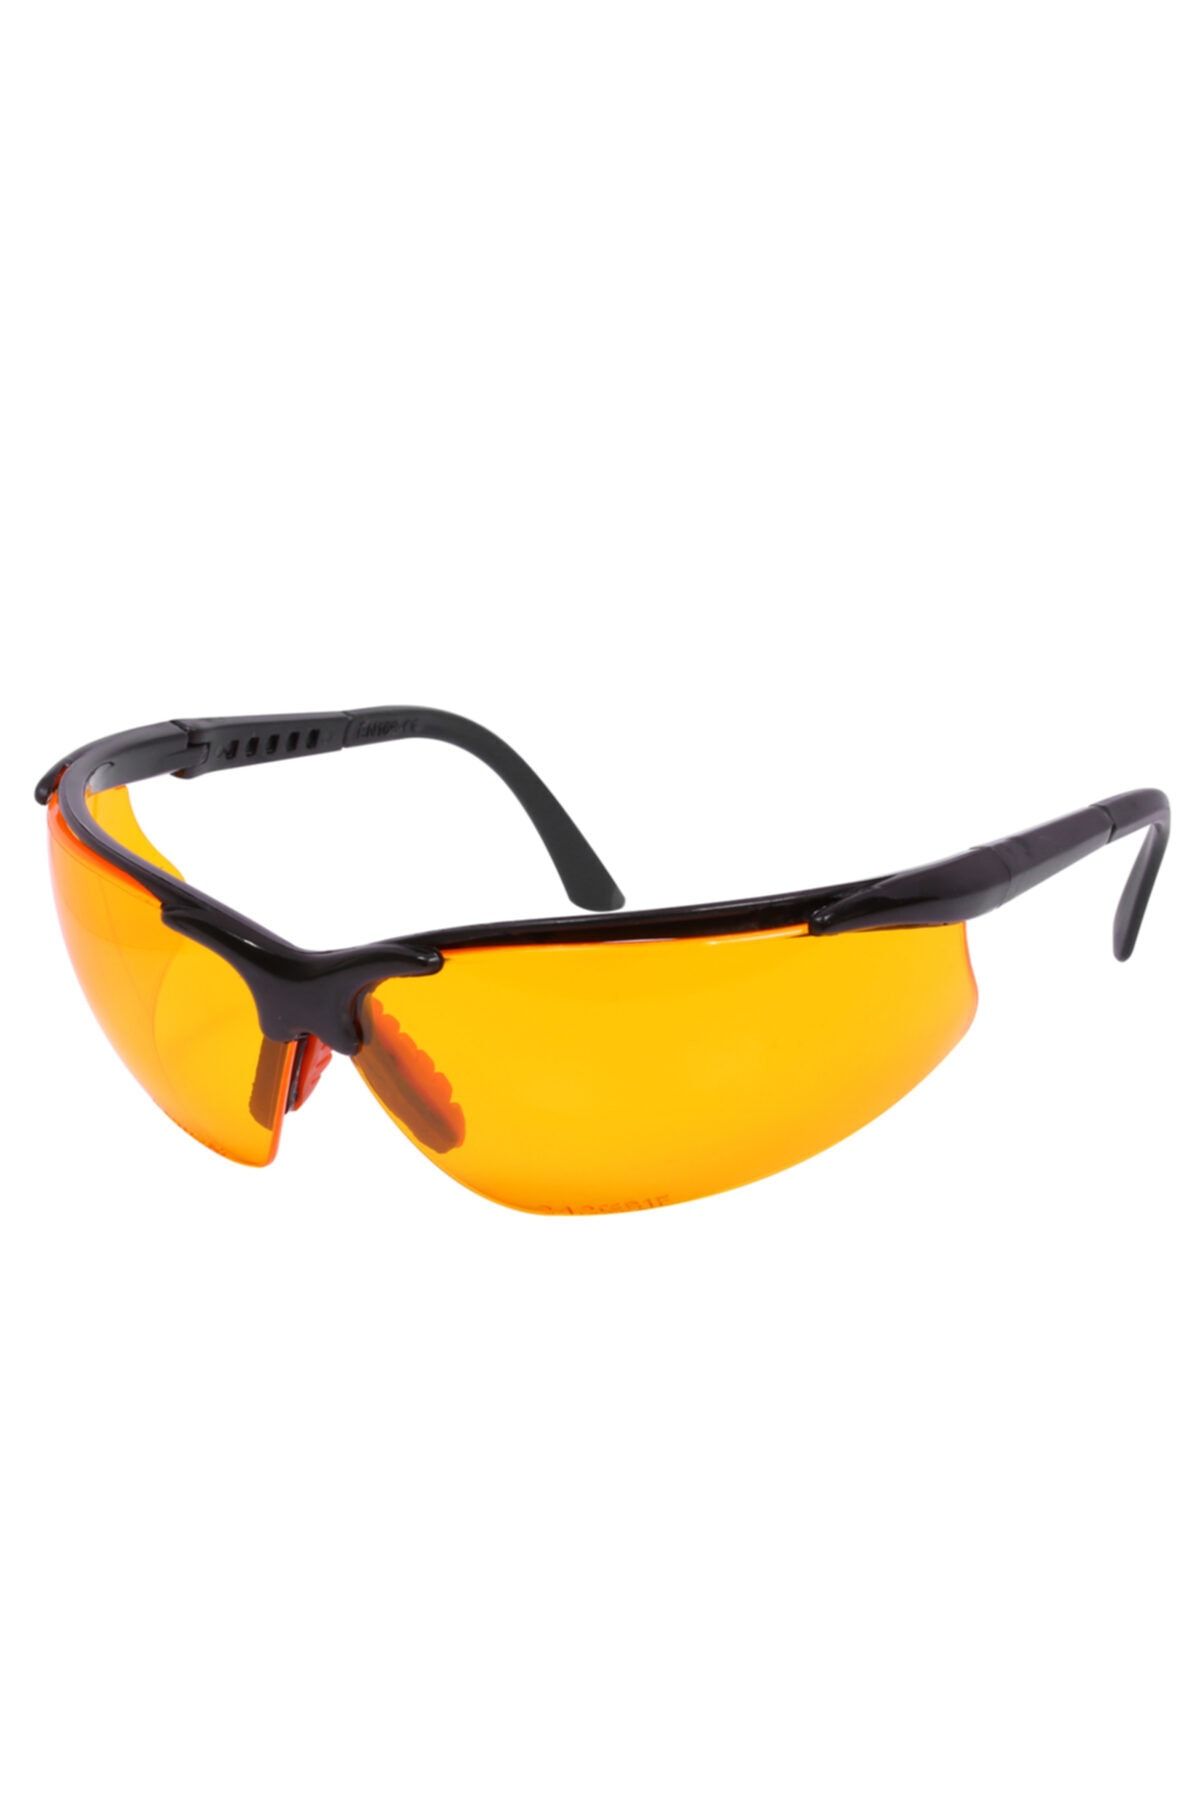 Badem10 Bisiklet Güneş Gözlüğü Koruyucu Silikonlu Bisikletçi Gözlük S600 Sarı Ürünleri